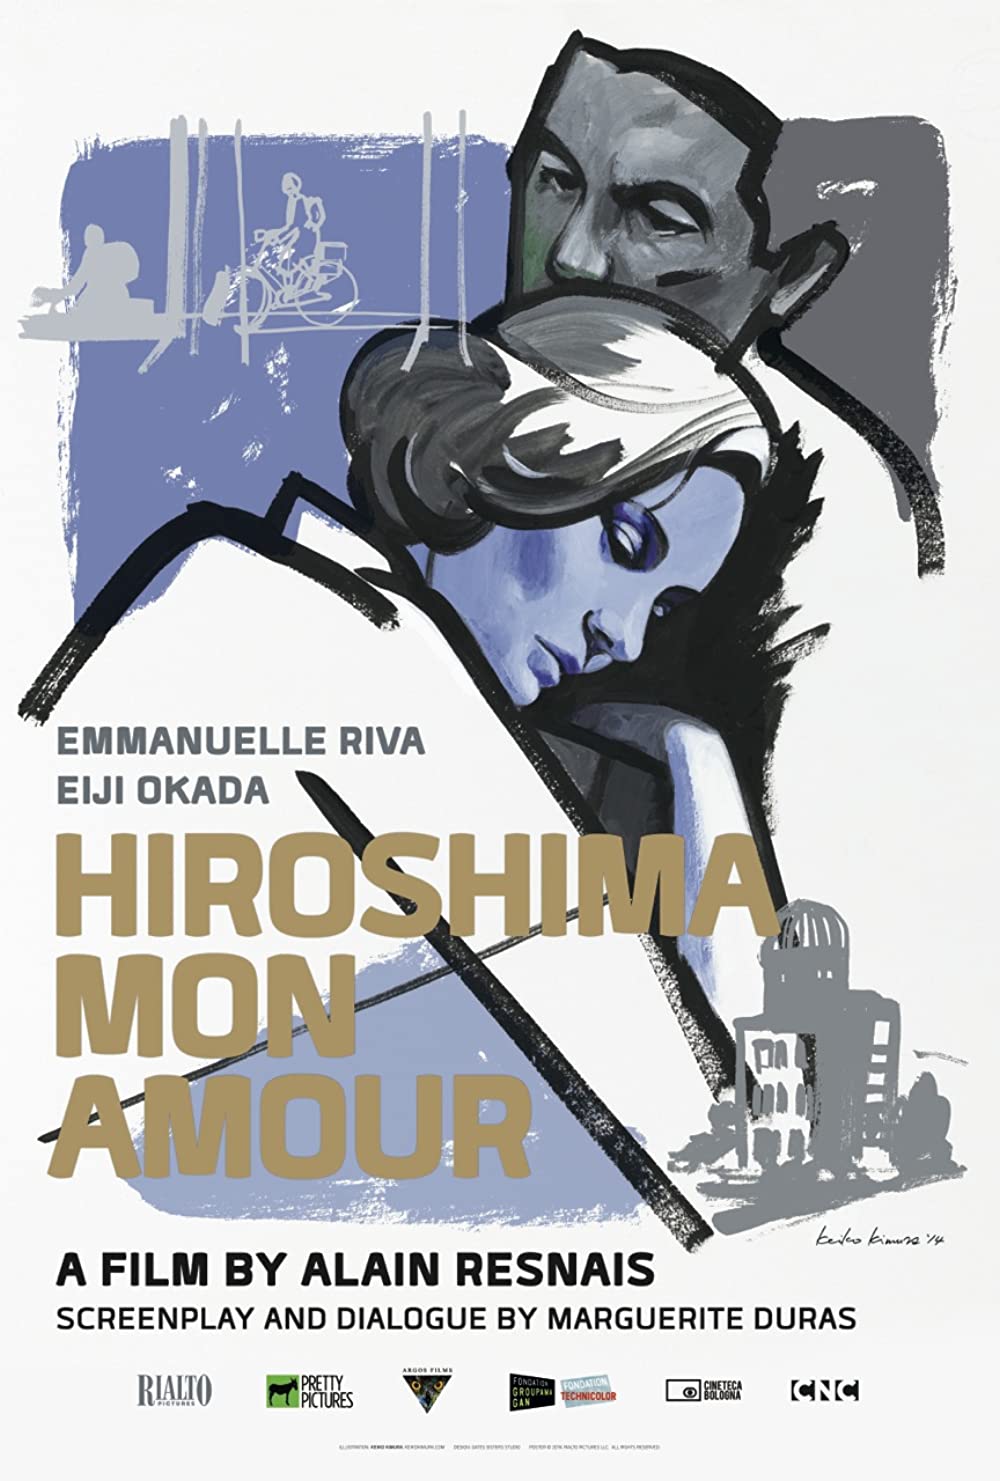 Filmbeschreibung zu Hiroshima mon amour